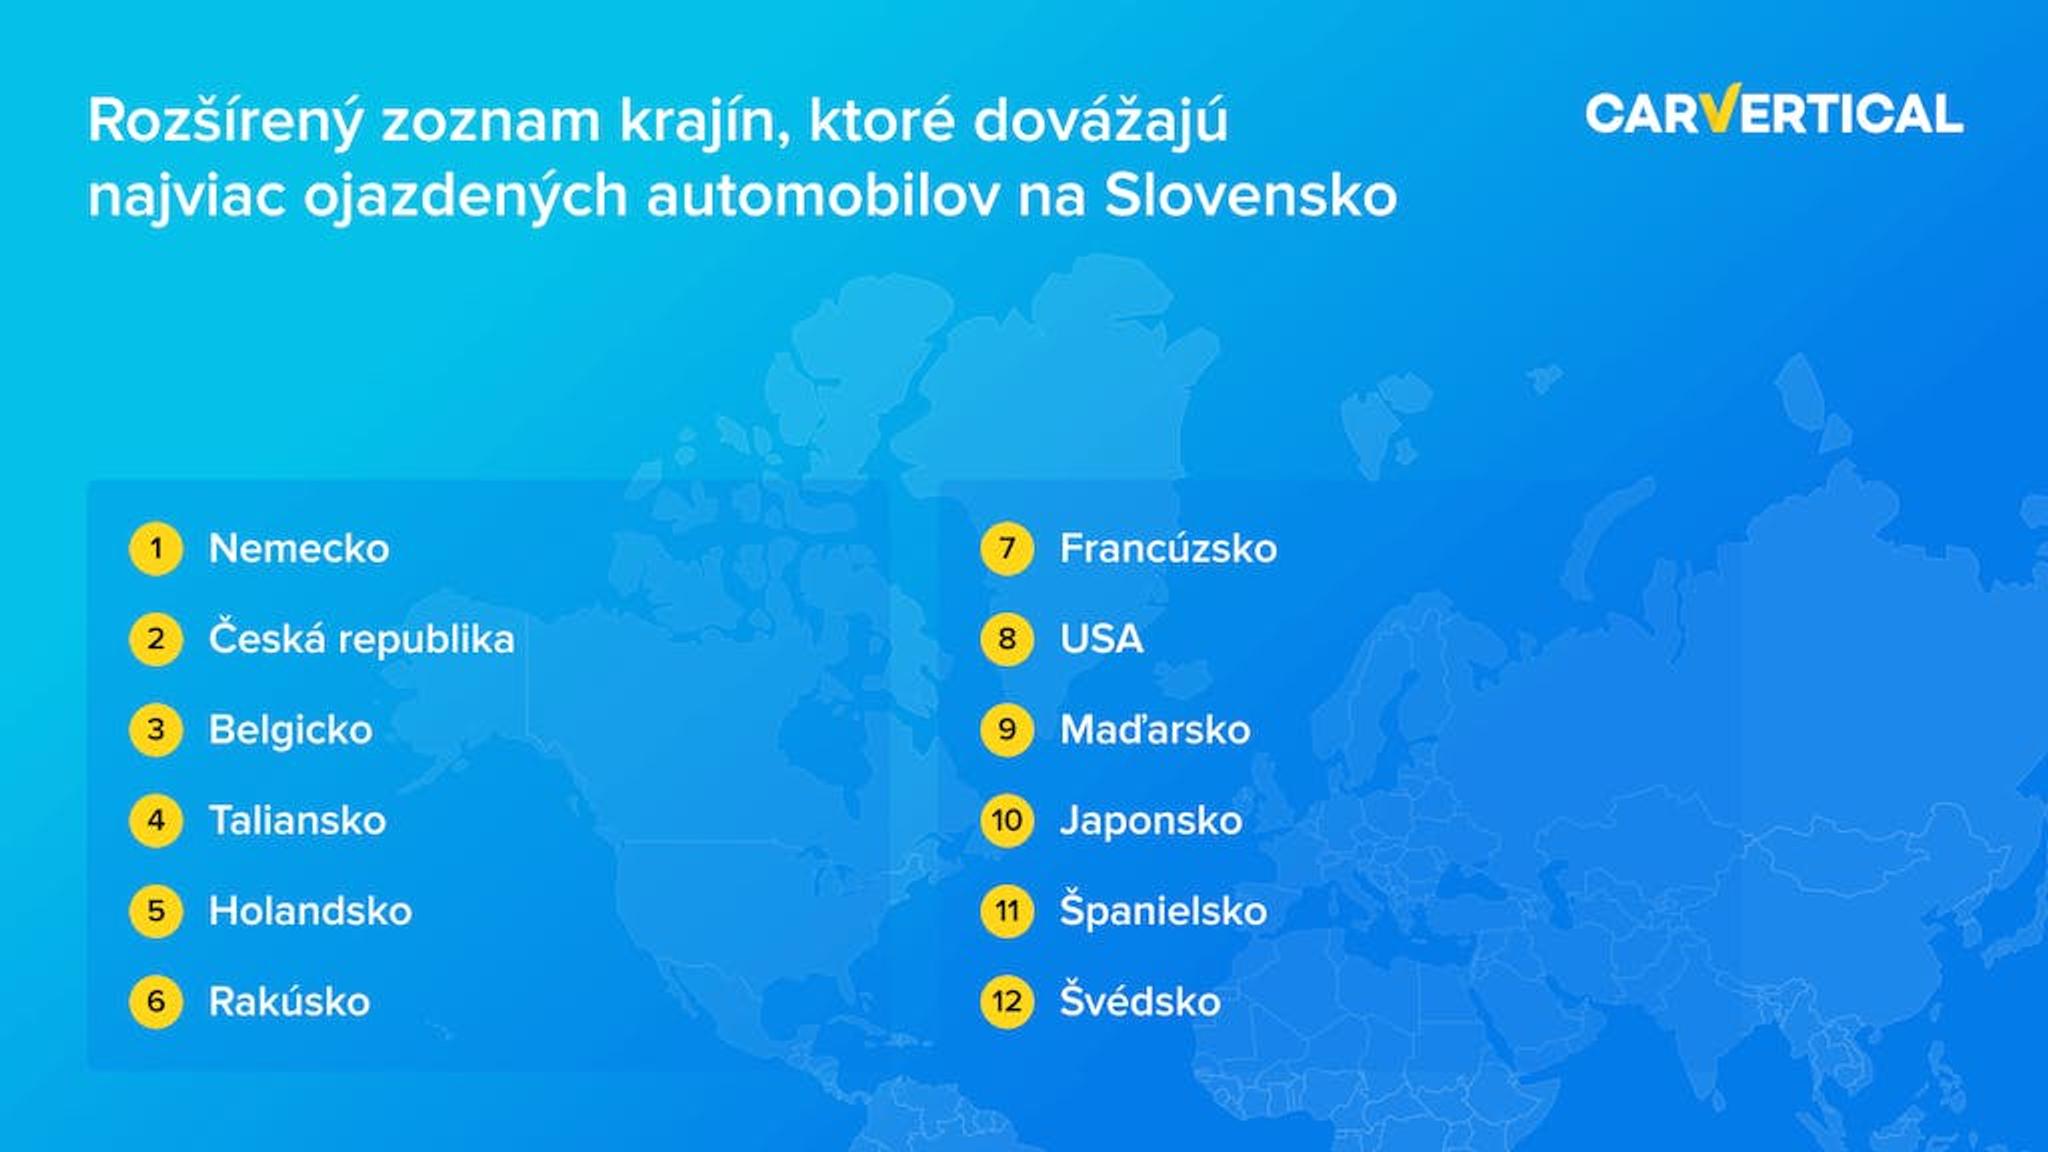 Rozsireny zoznam krajin, ktore dovazaju najviac ojazdenych automobilov na Slovensko